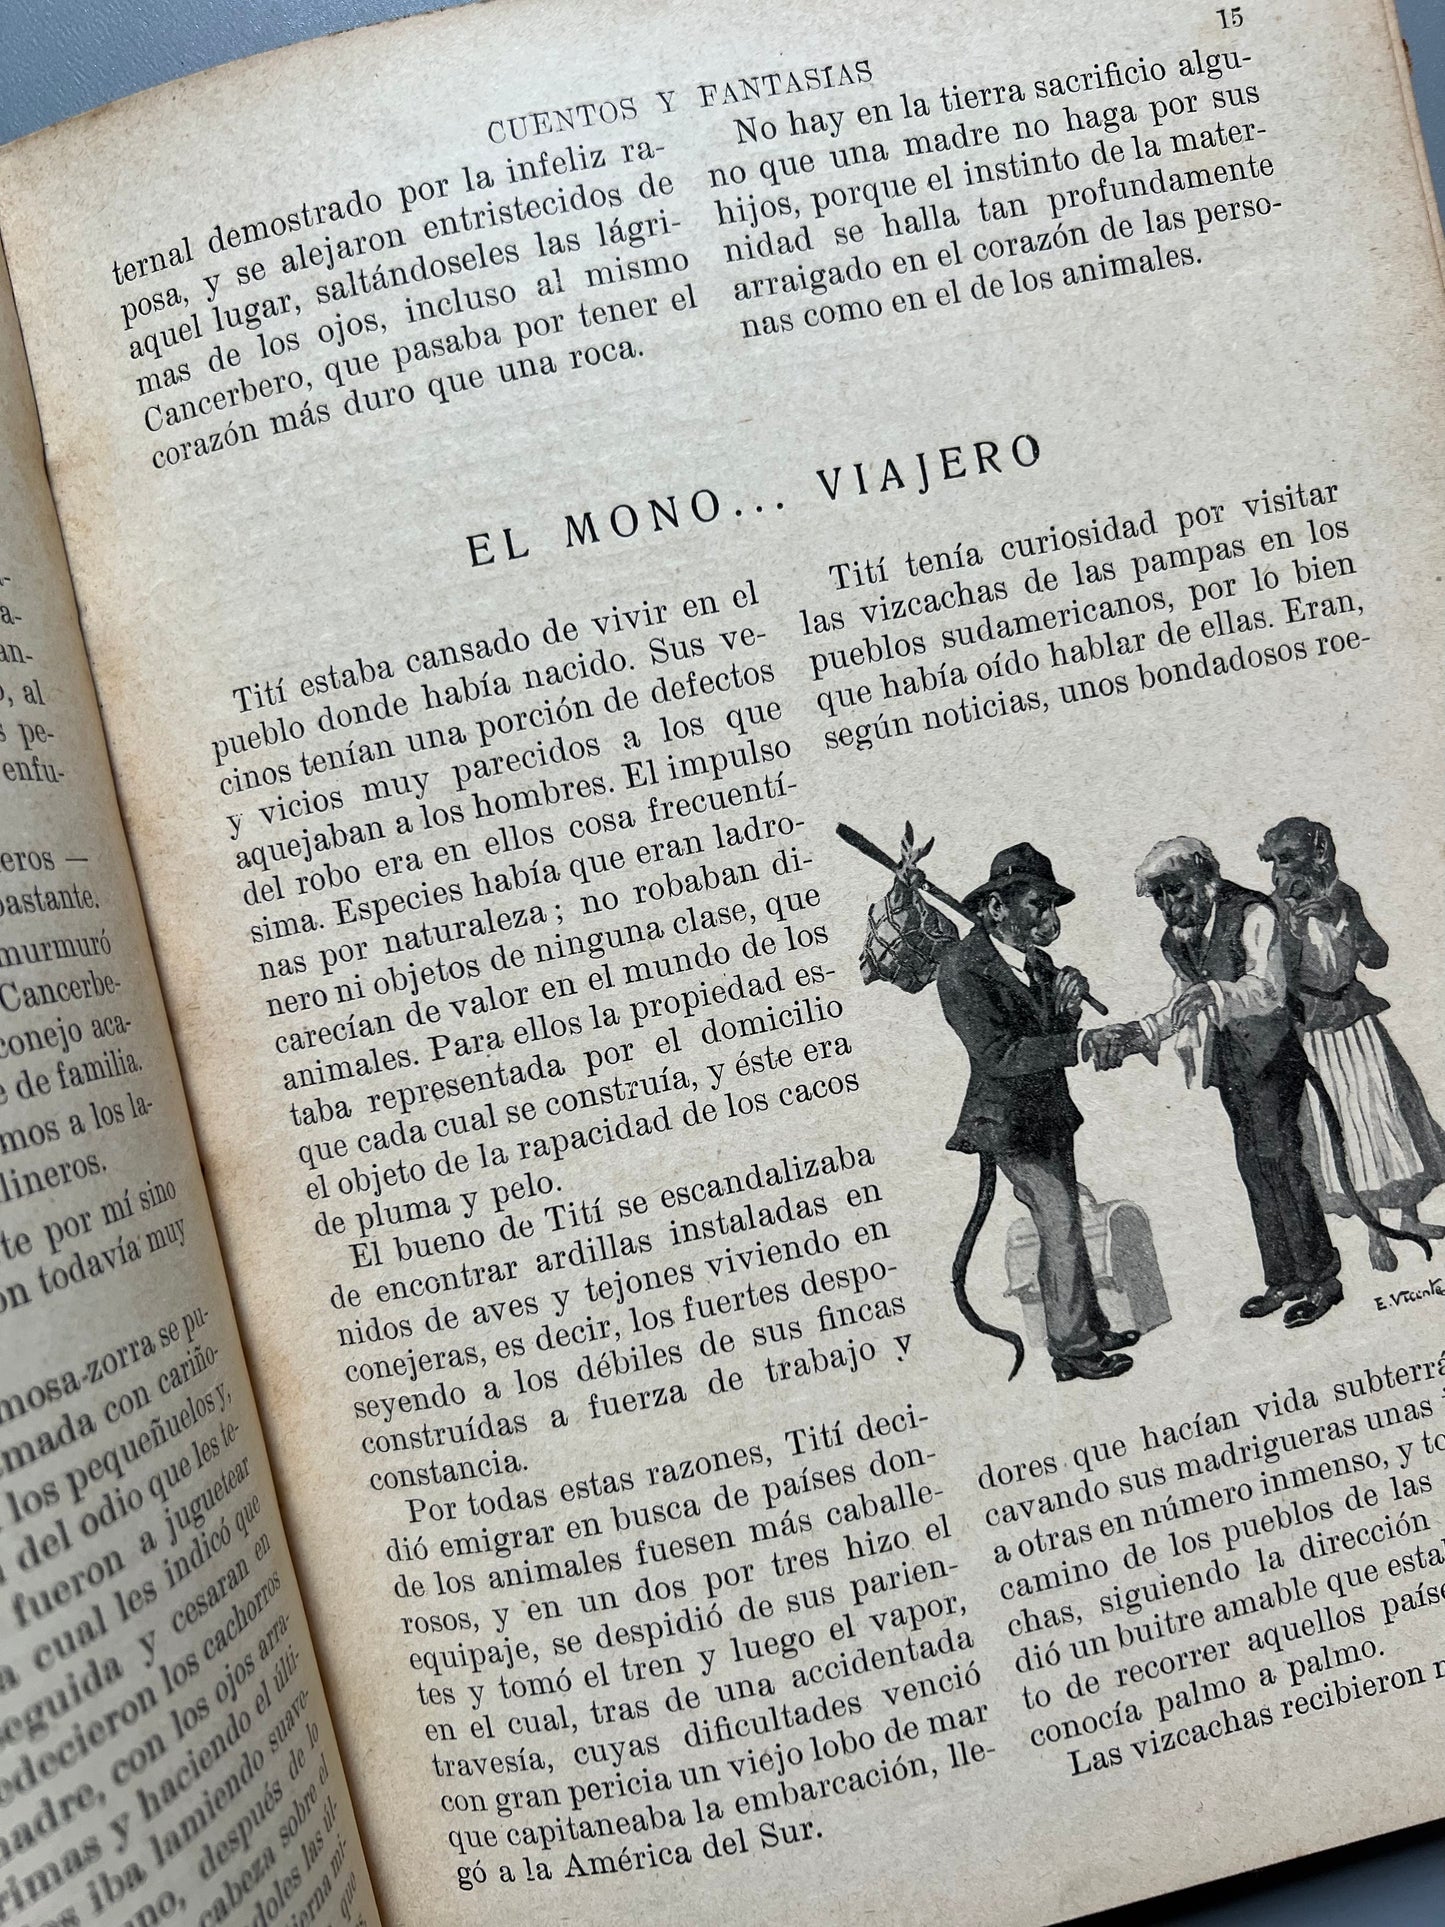 Cuentos y fantasías - Editorial Ramón Sopena, 1935